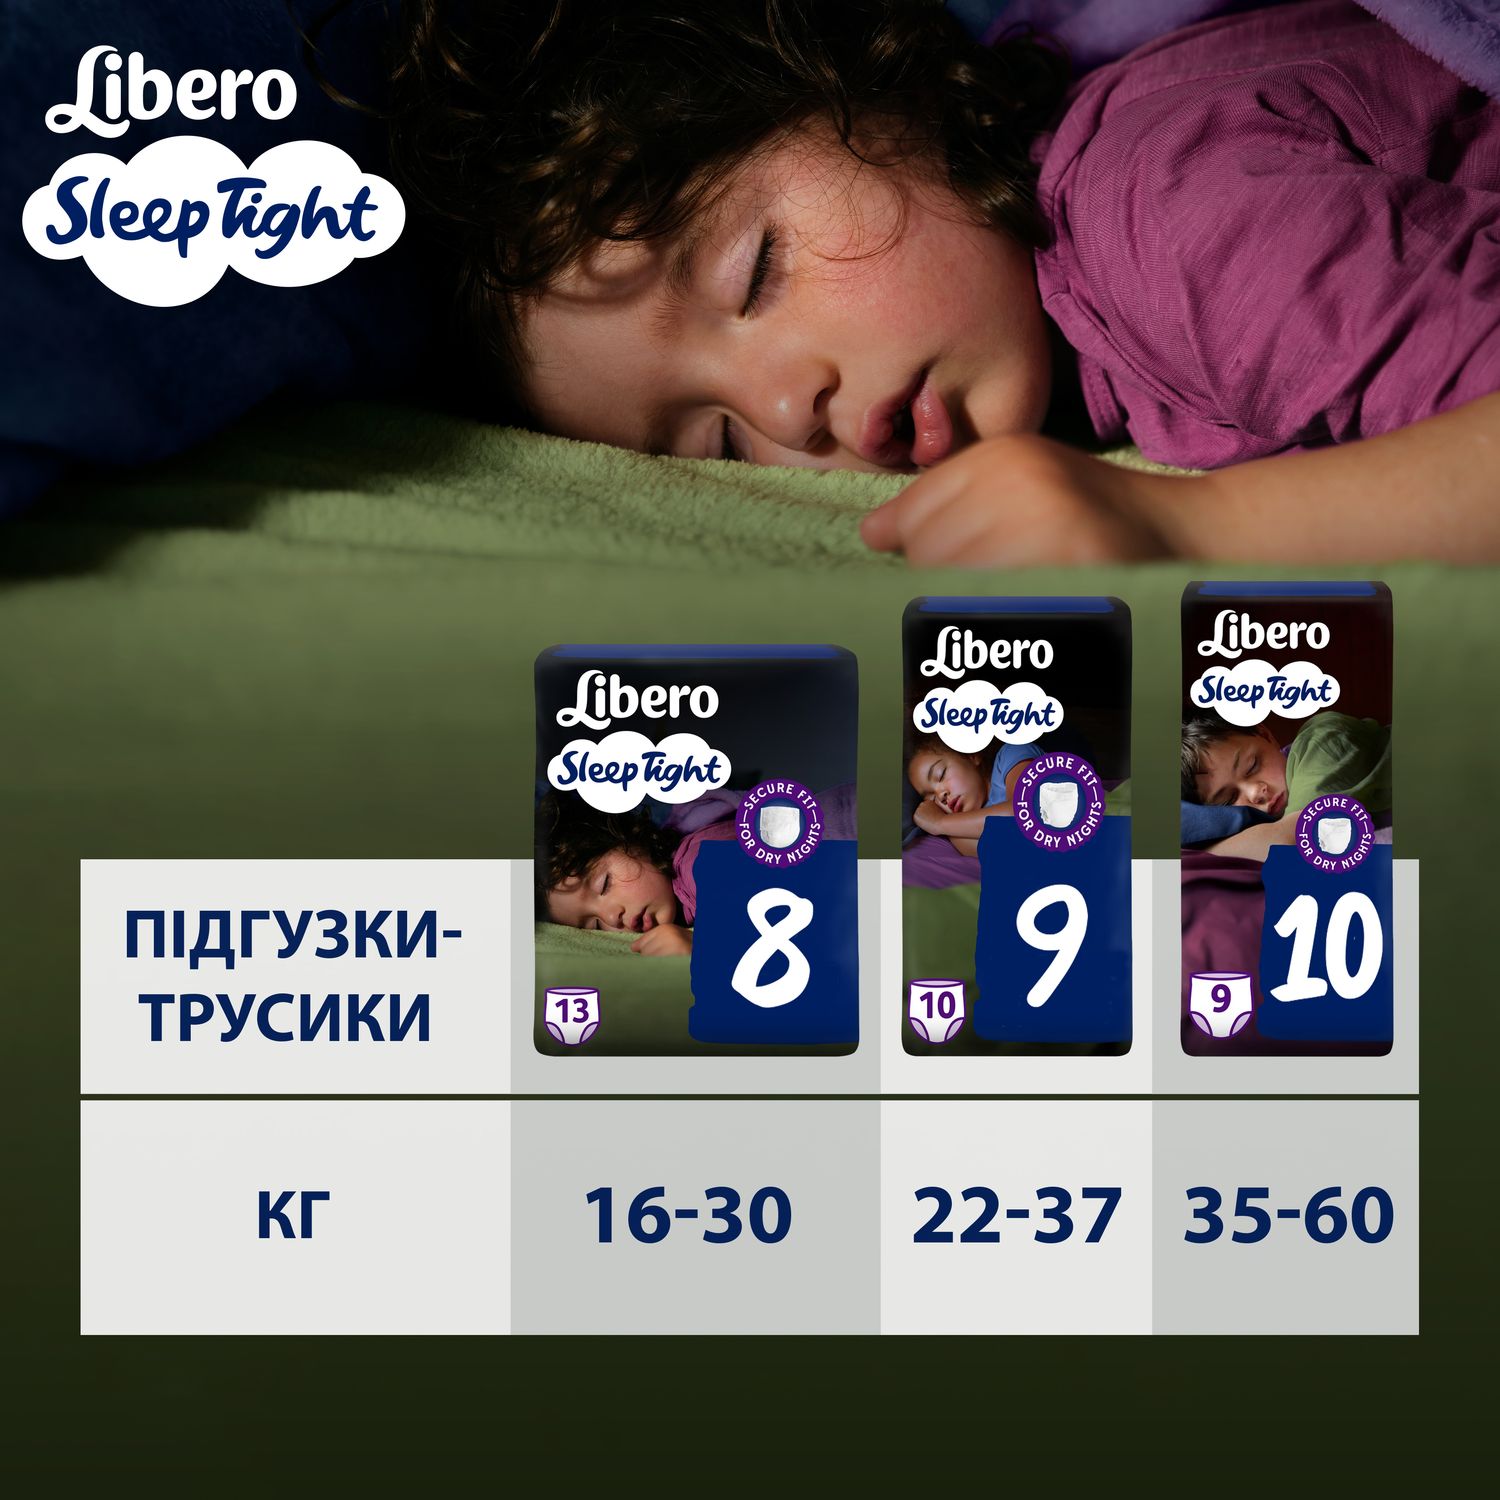 Підгузки-трусики Libero Sleep Tight 9 (22-37 кг), 10 шт. - фото 8